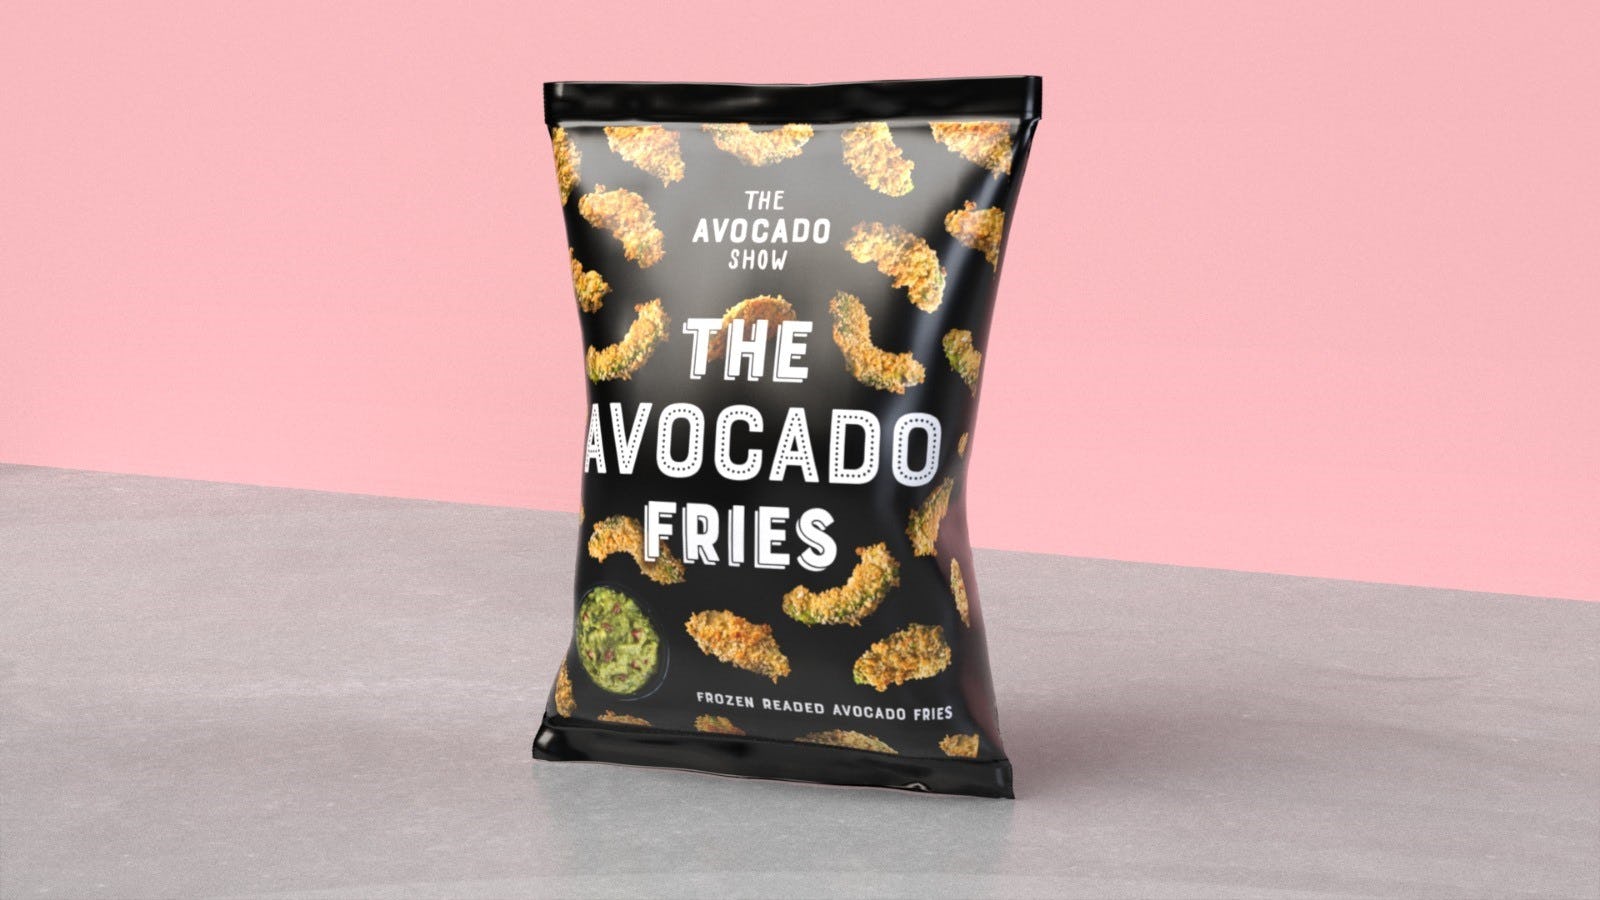 The Avocado Show en Salud brengen avocado friet voor de horeca op de markt